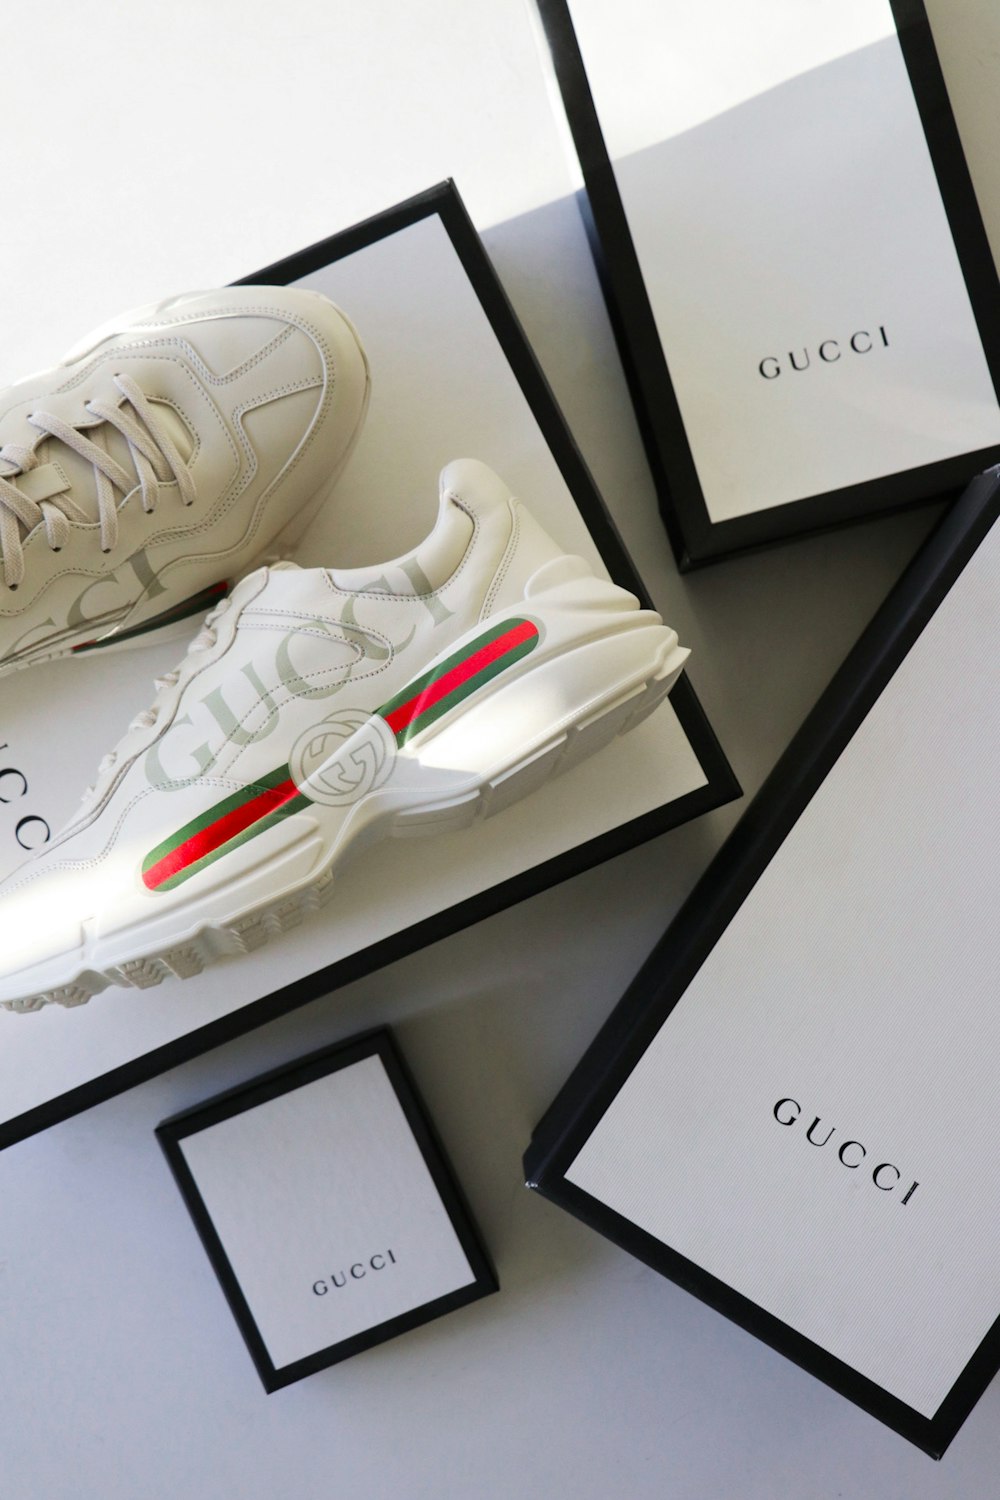 Do Gucci Sneakers Run Small?